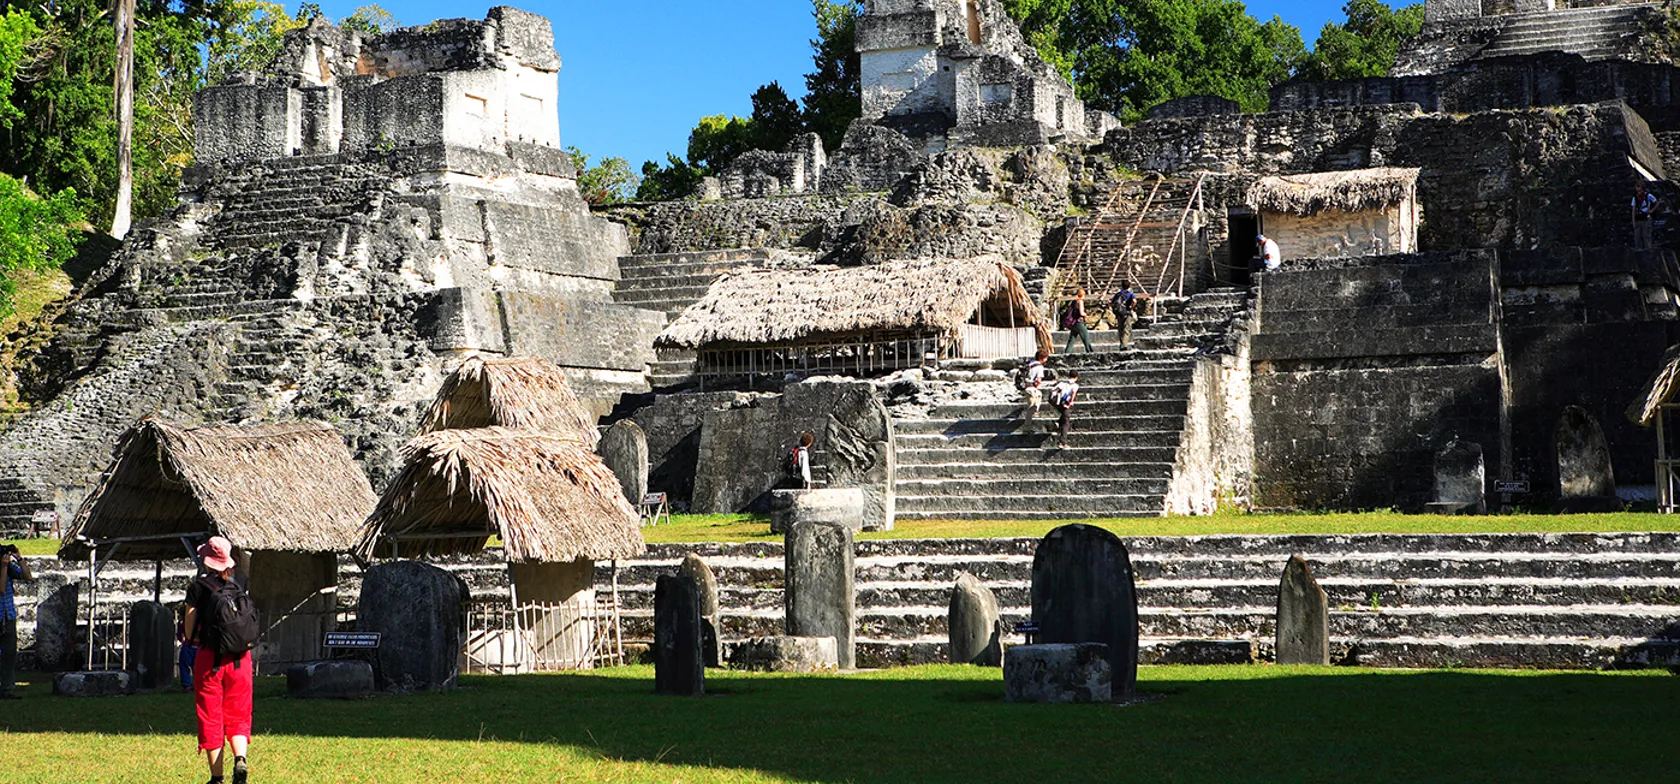 Grand Plaza var hjertet i mayabyen Tikal. Foto Anders Stoustrup